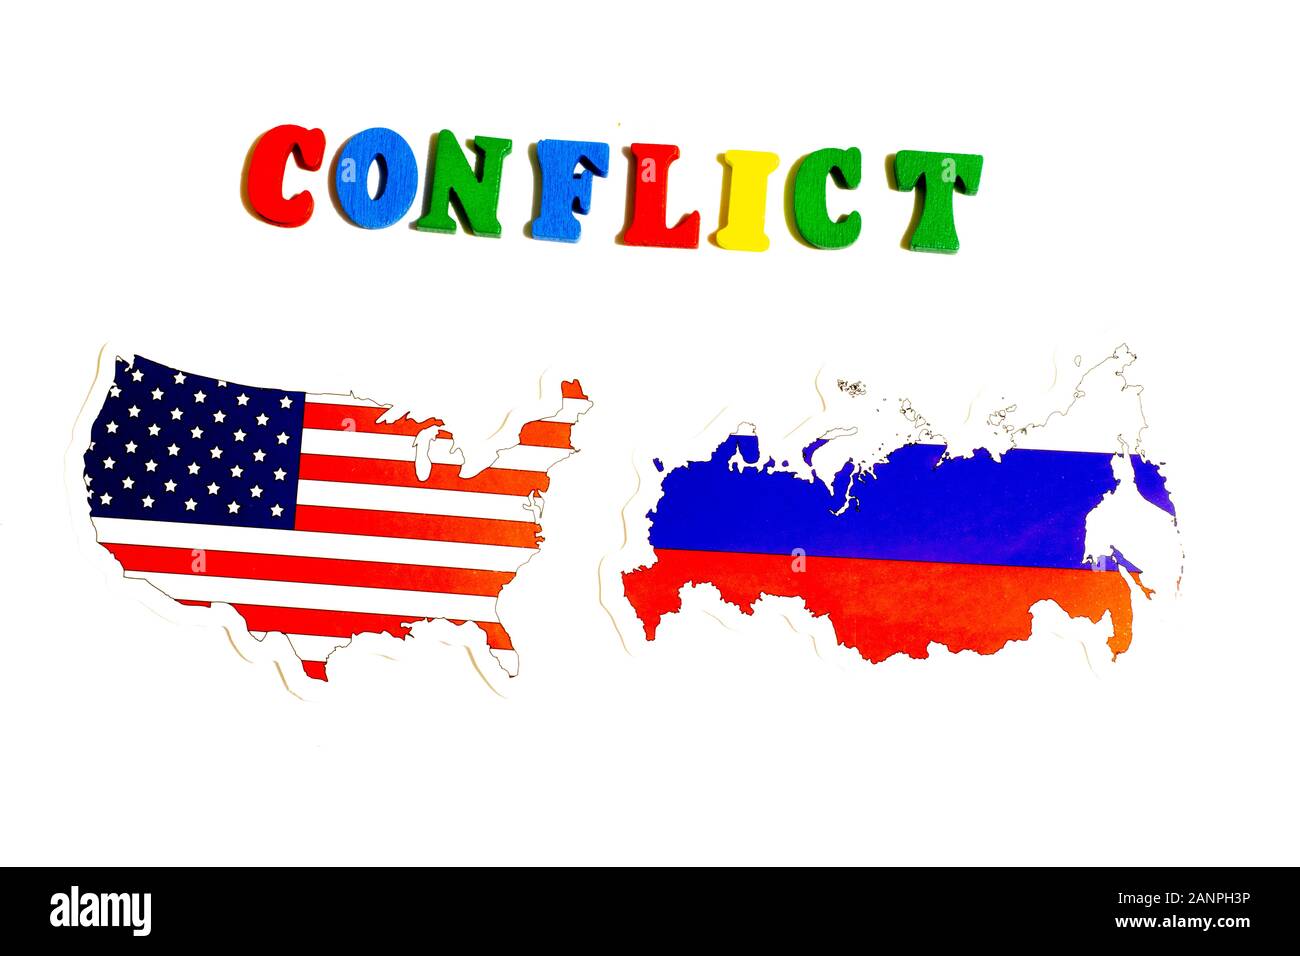 Los Angeles, Kalifornien, USA - 17. Januar 2020: USA gegen Russland Konfliktkonzept Nationalflaggen auf weißem Hintergrund. Illustration für Politik Stockfoto